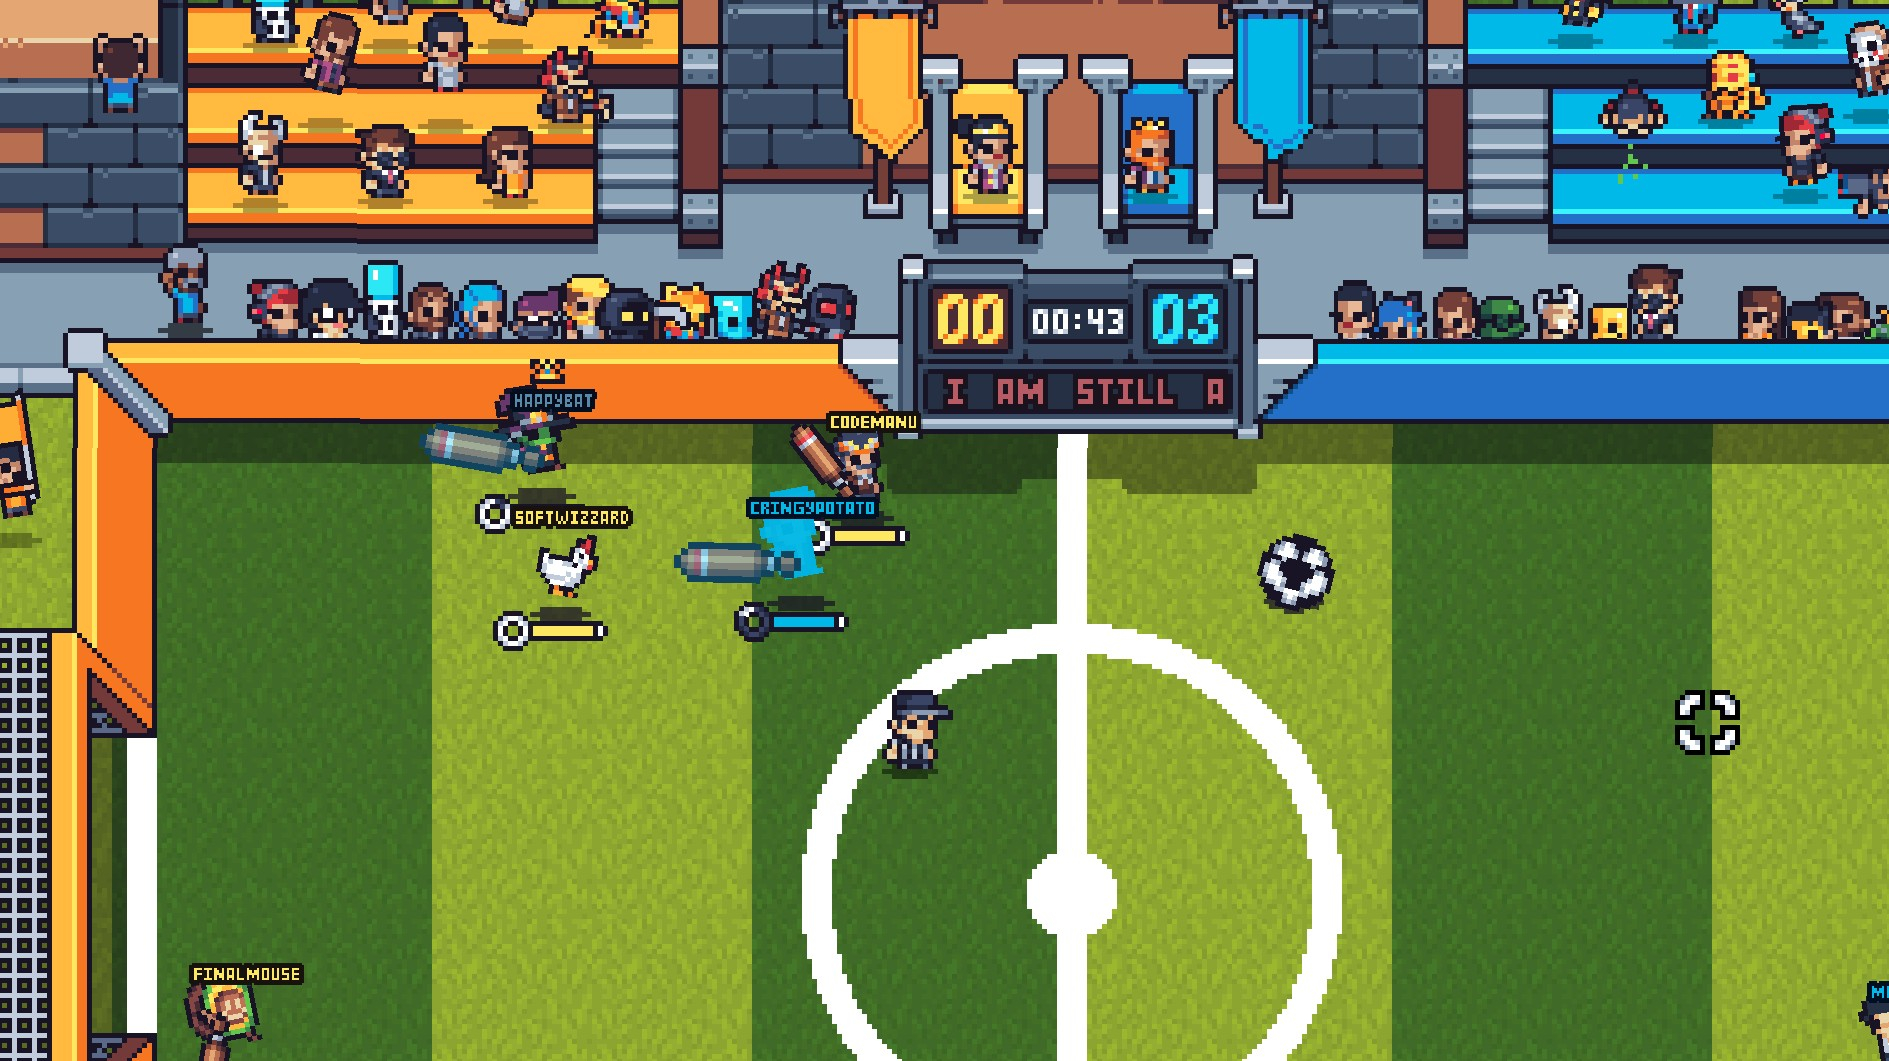 Guts ‘N Goals – game bóng đá cho phép bạn “xử” đối phương giữa trận